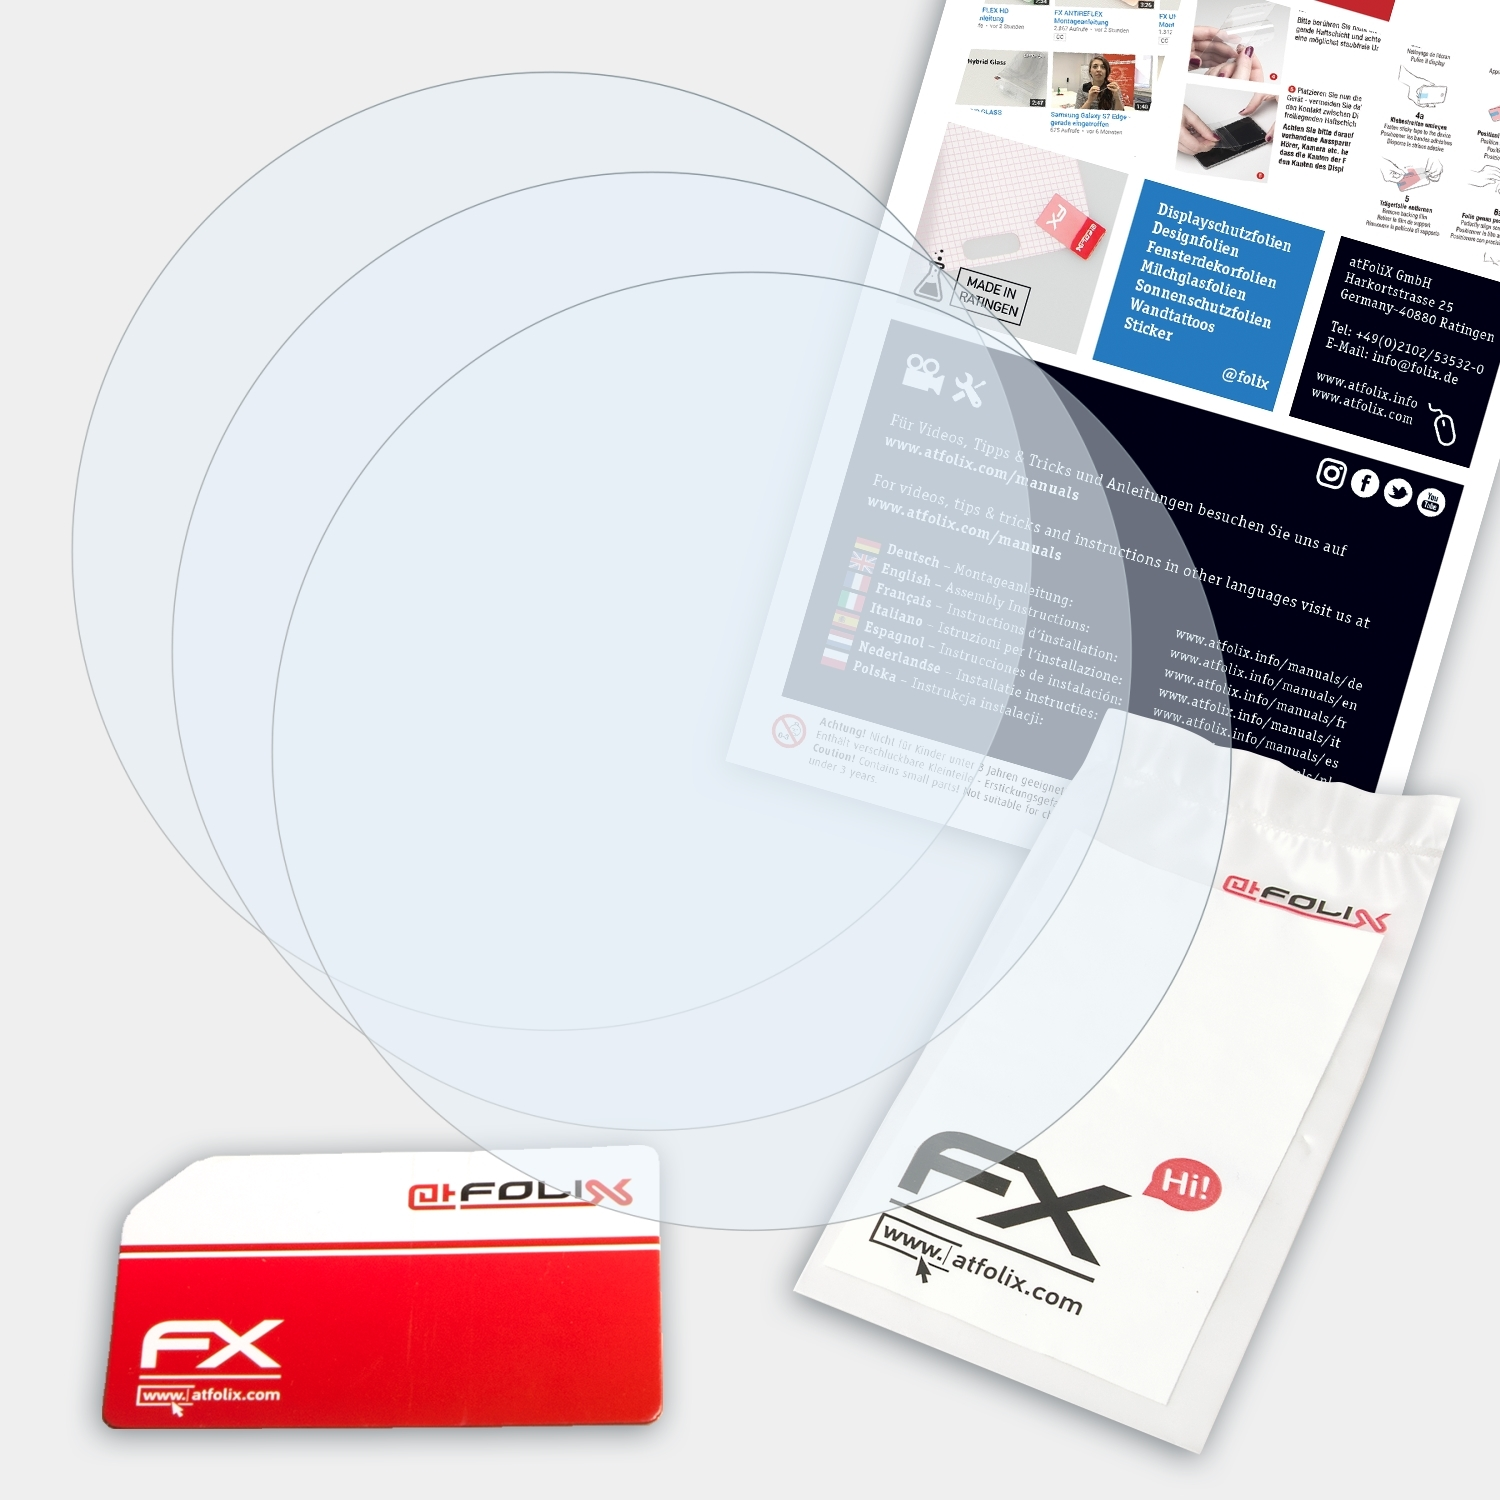 ATFOLIX 3x FX-Clear Casio Displayschutz(für GA-900SKE-8AER)